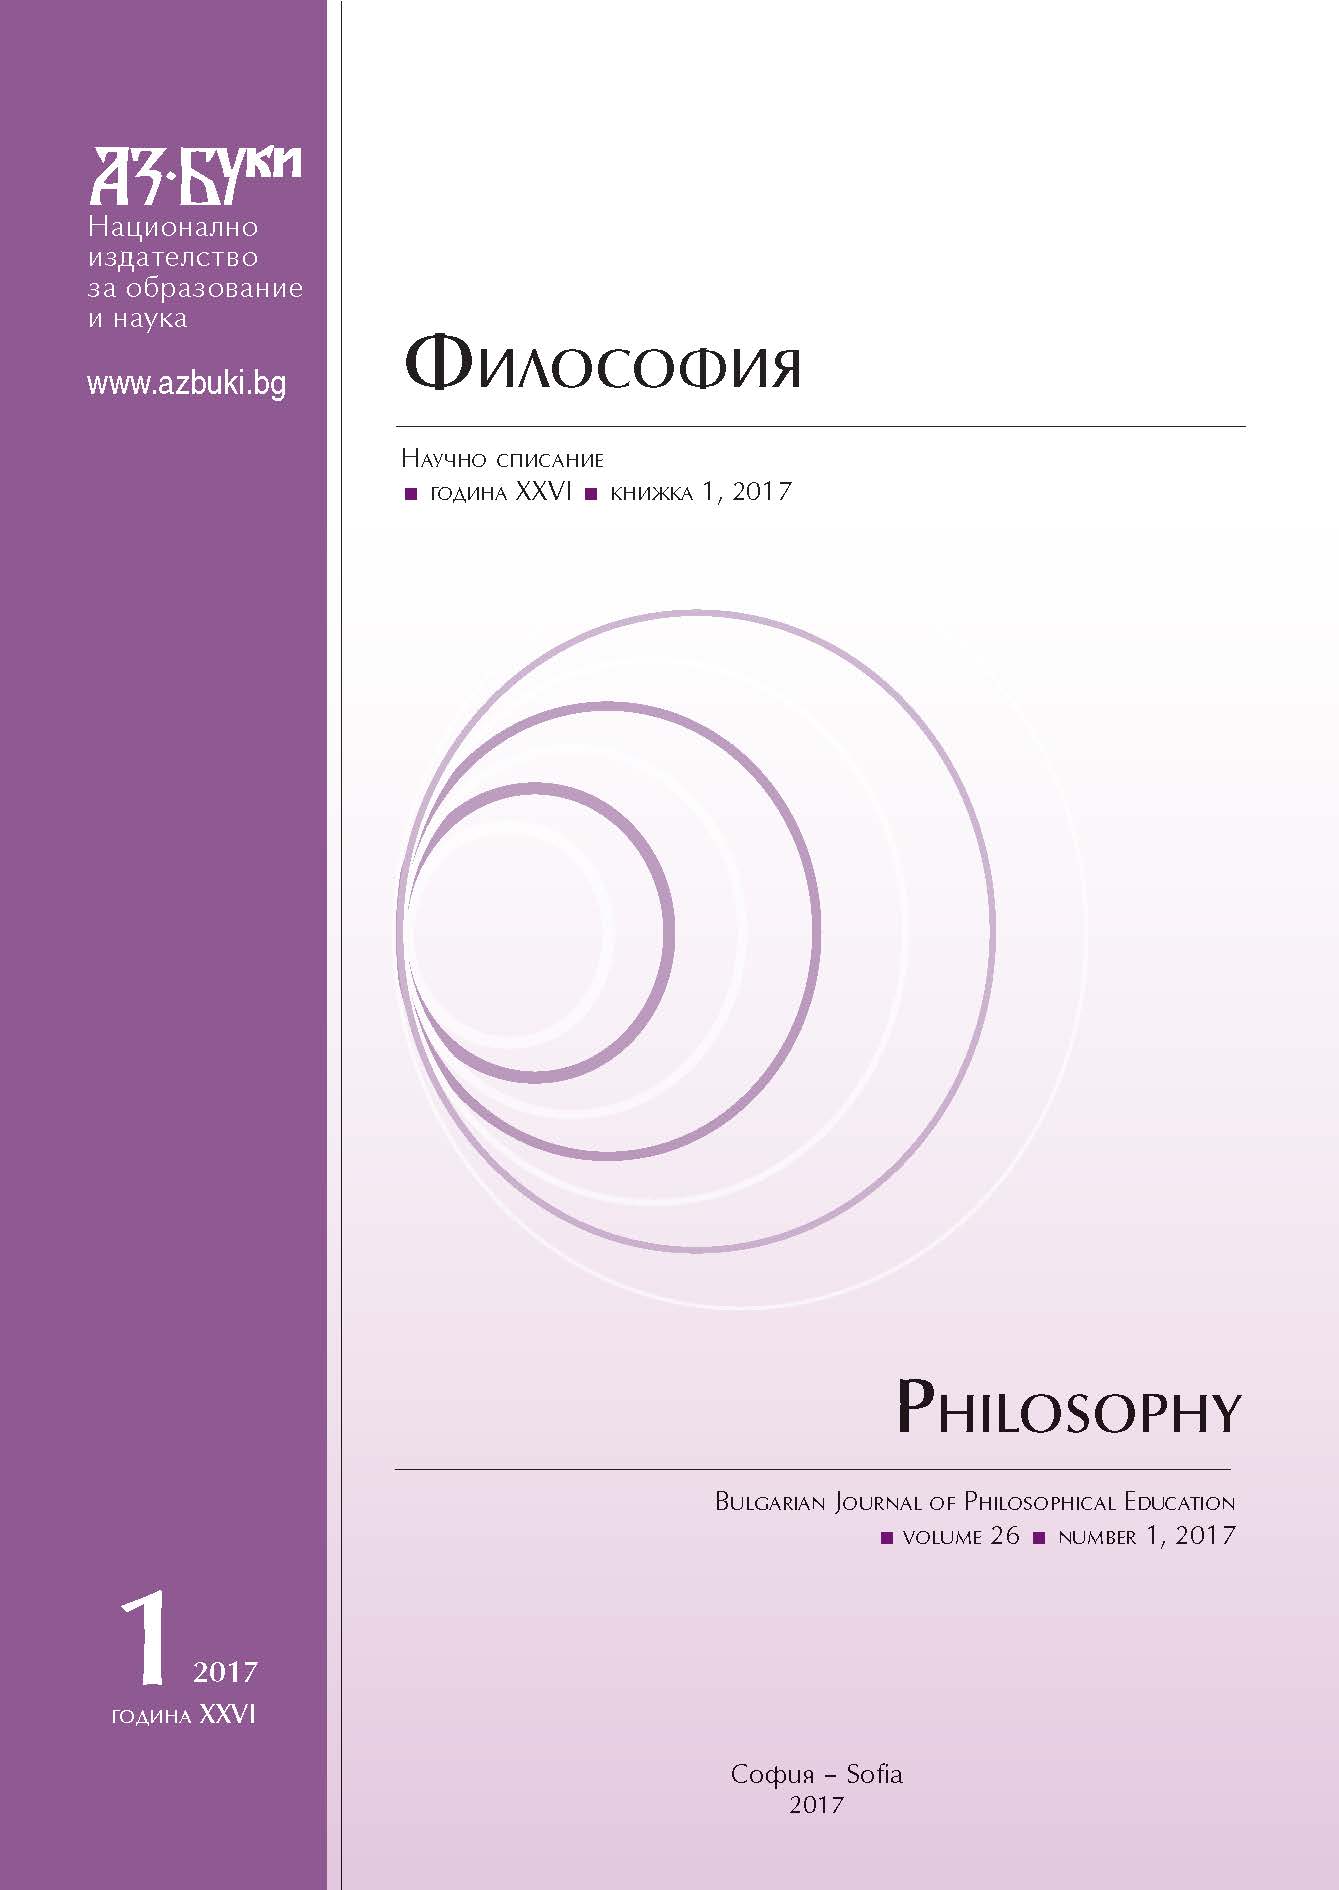 Сборник Философски опити – една впечатляваща академична традиция